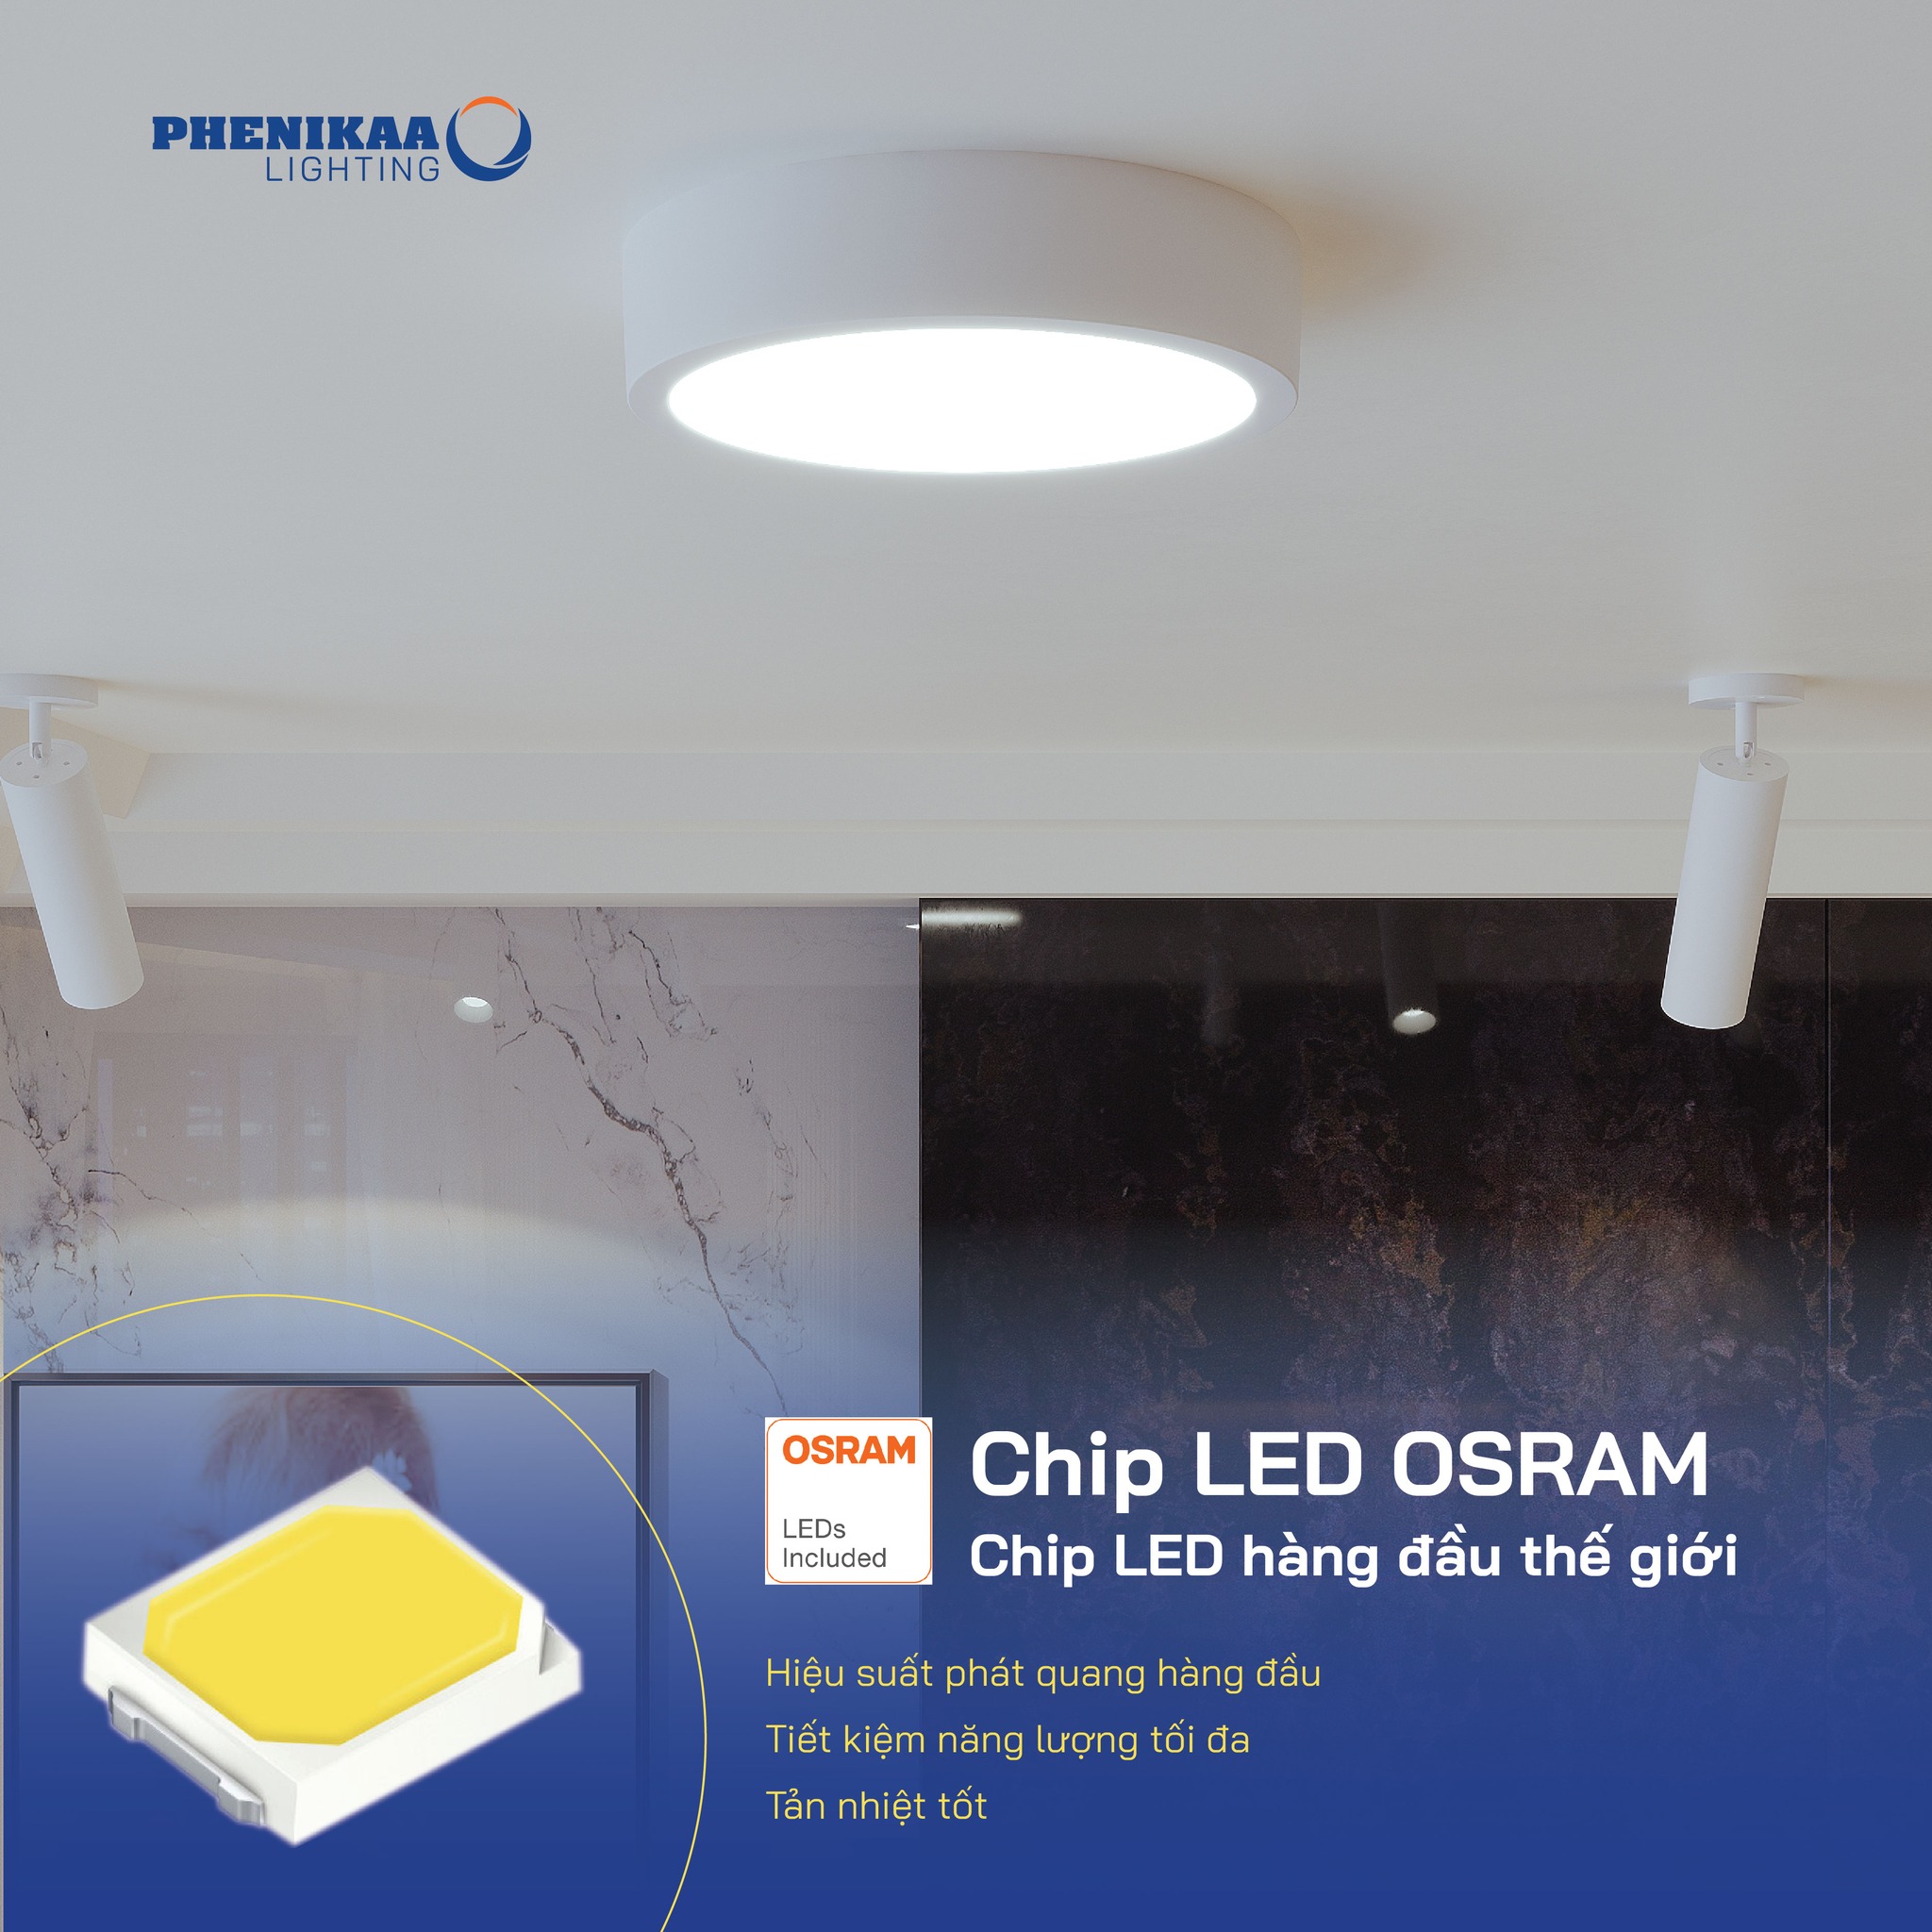 Đèn LED downlight nổi trần Phenikaa Lighting sử dụng chip LED Osram cho hiệu suất chiếu sáng cao